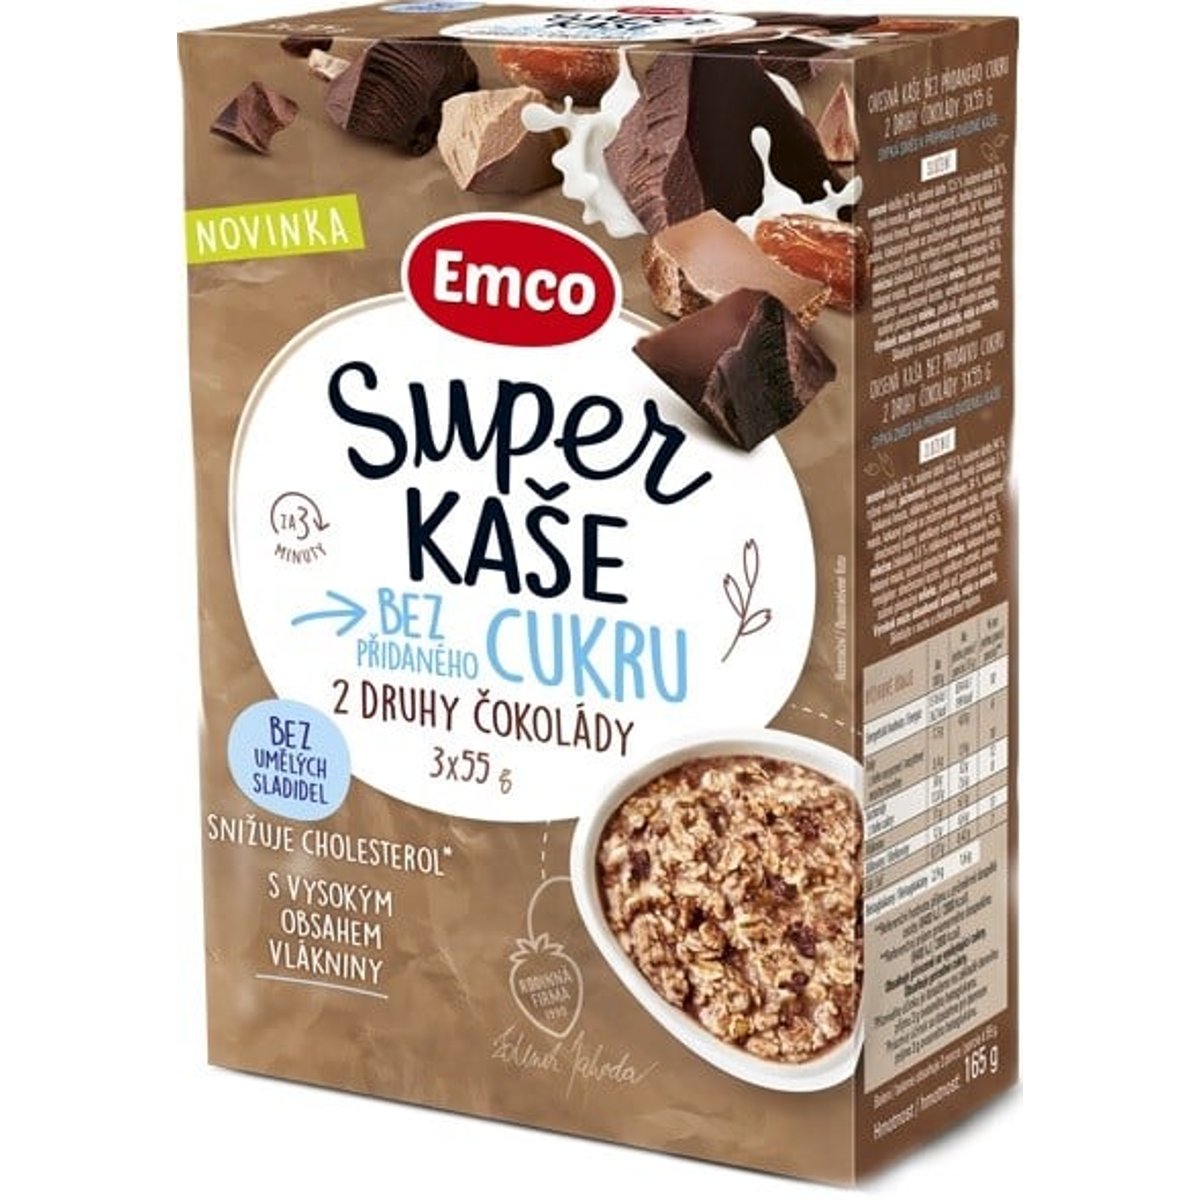 Emco Super kaše 2 druhy čokolády 3×55 g